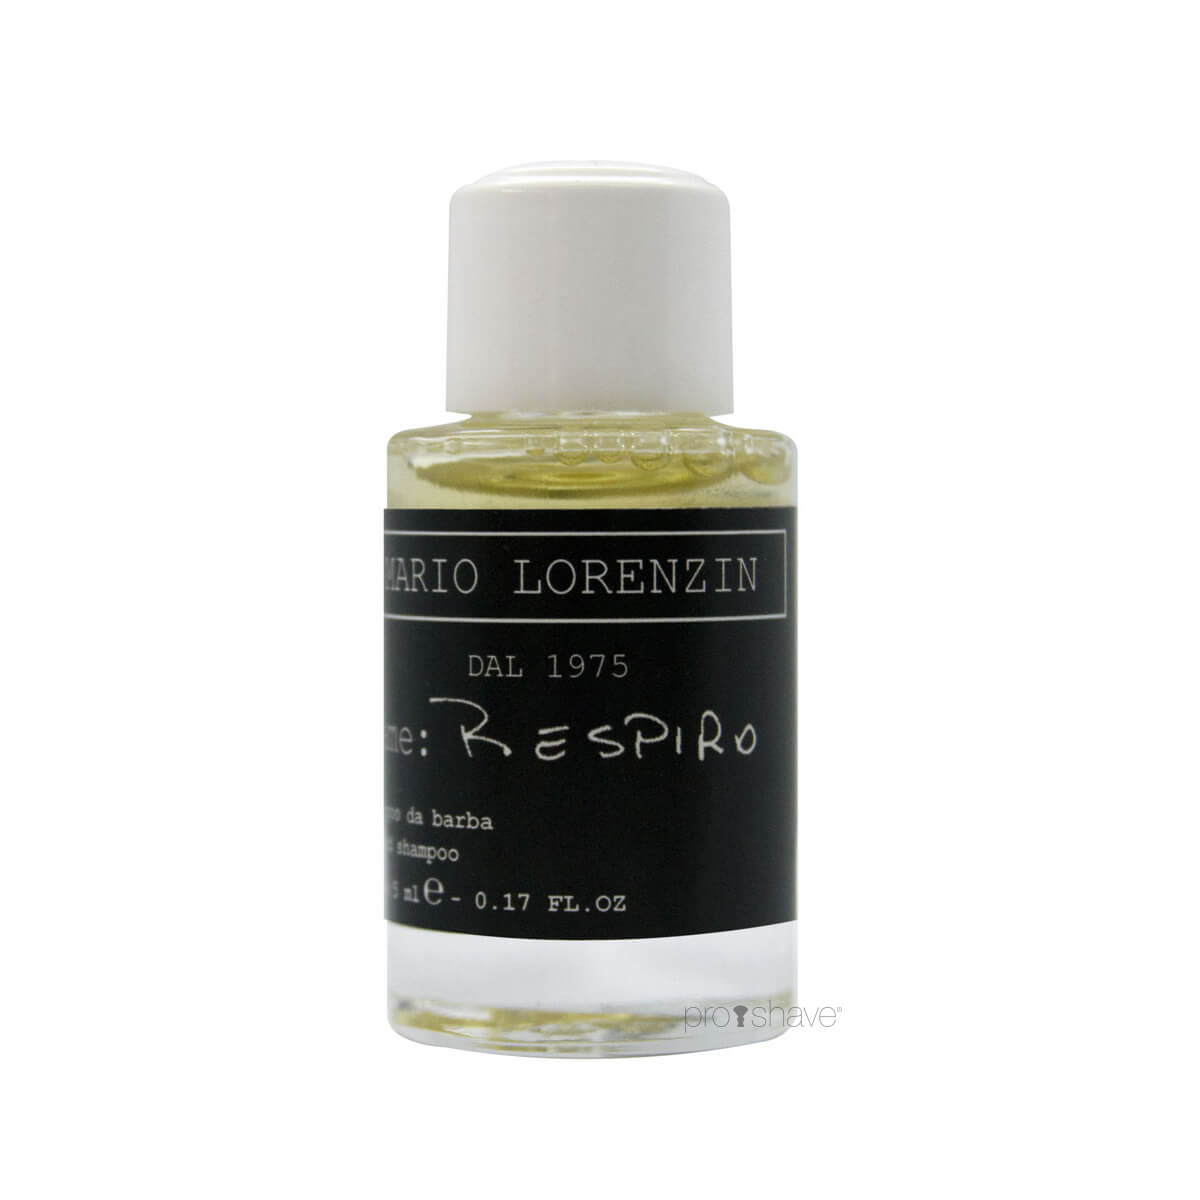 Mario Lorenzin 1975 Beard Shampoo, Respiro, Luksus Sample, 5 ml.